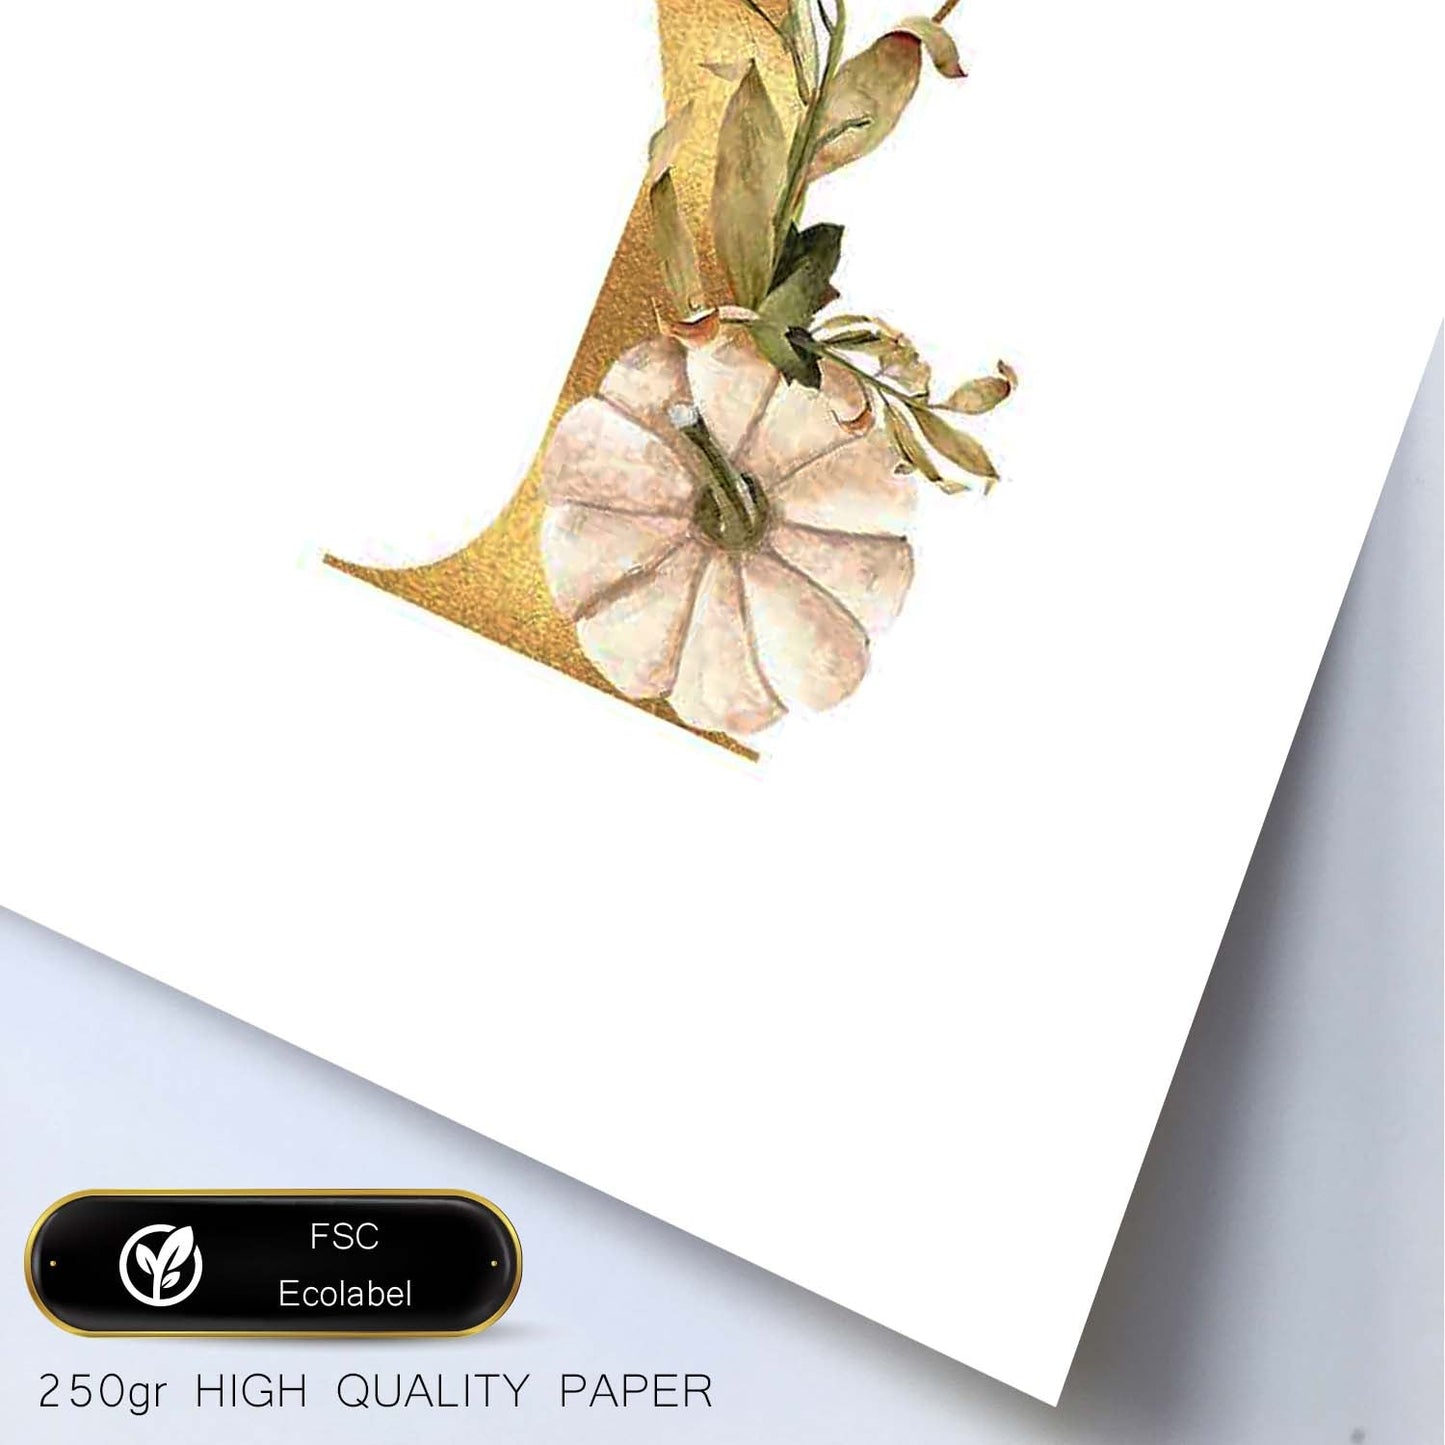 Poster de letra Y. Lámina estilo Dorado Floral con imágenes del alfabeto.-Artwork-Nacnic-Nacnic Estudio SL